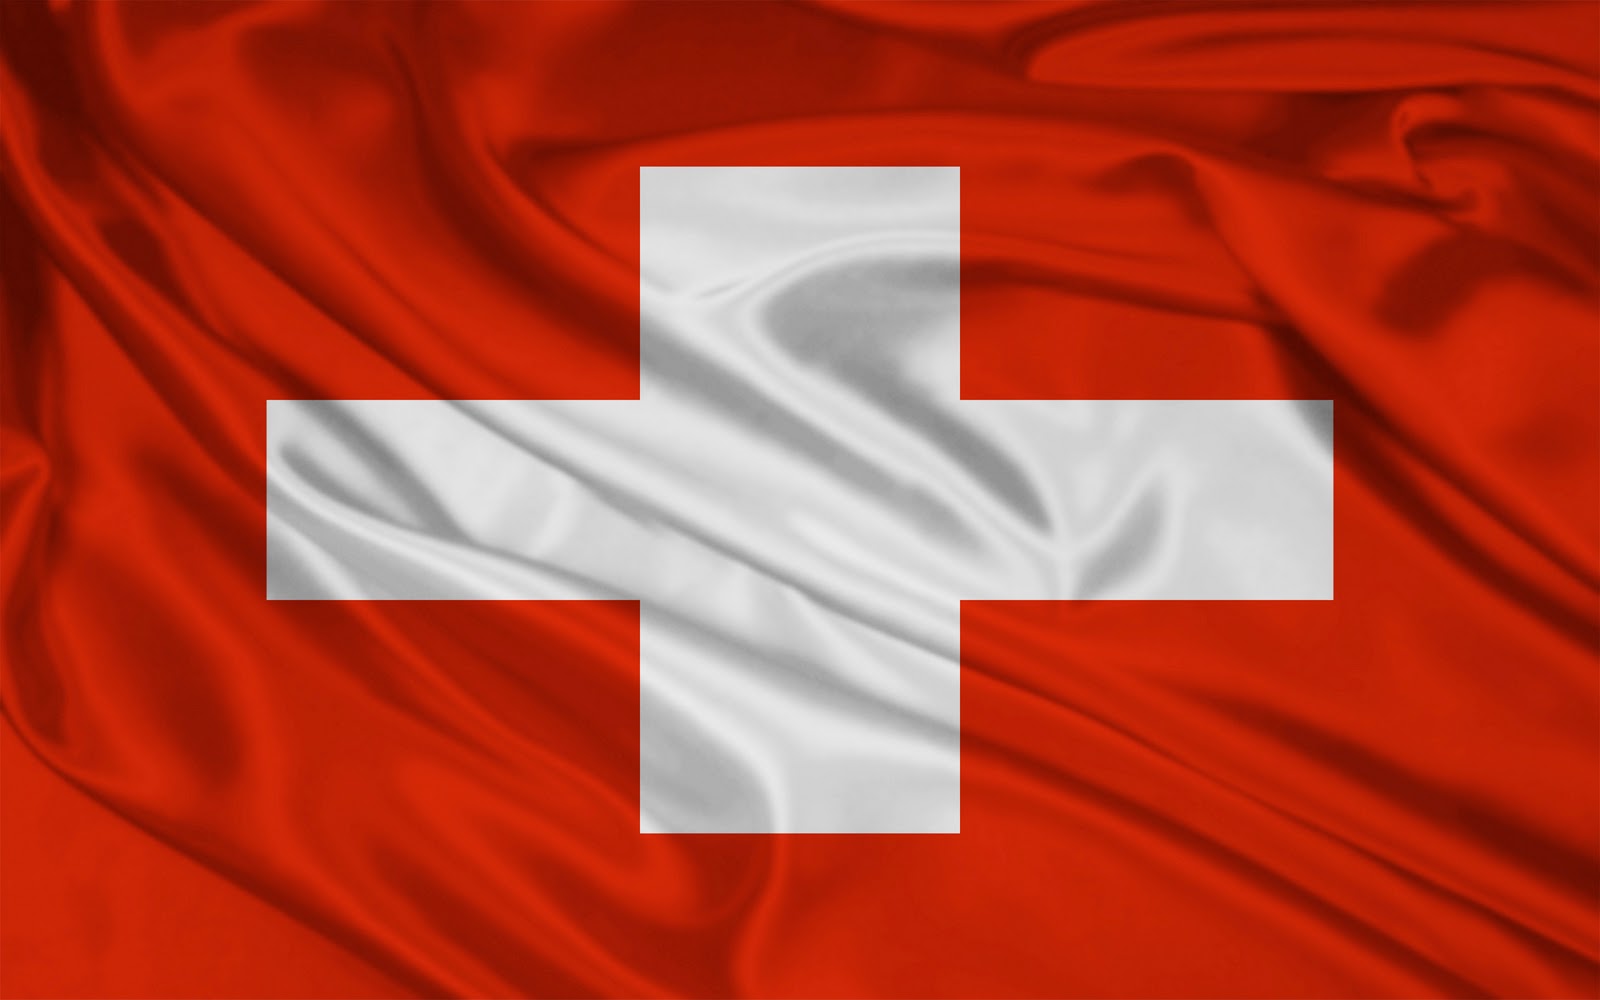 FINANCE 2.0 joins the Bitcoin Association — Bitcoin Association Switzerland